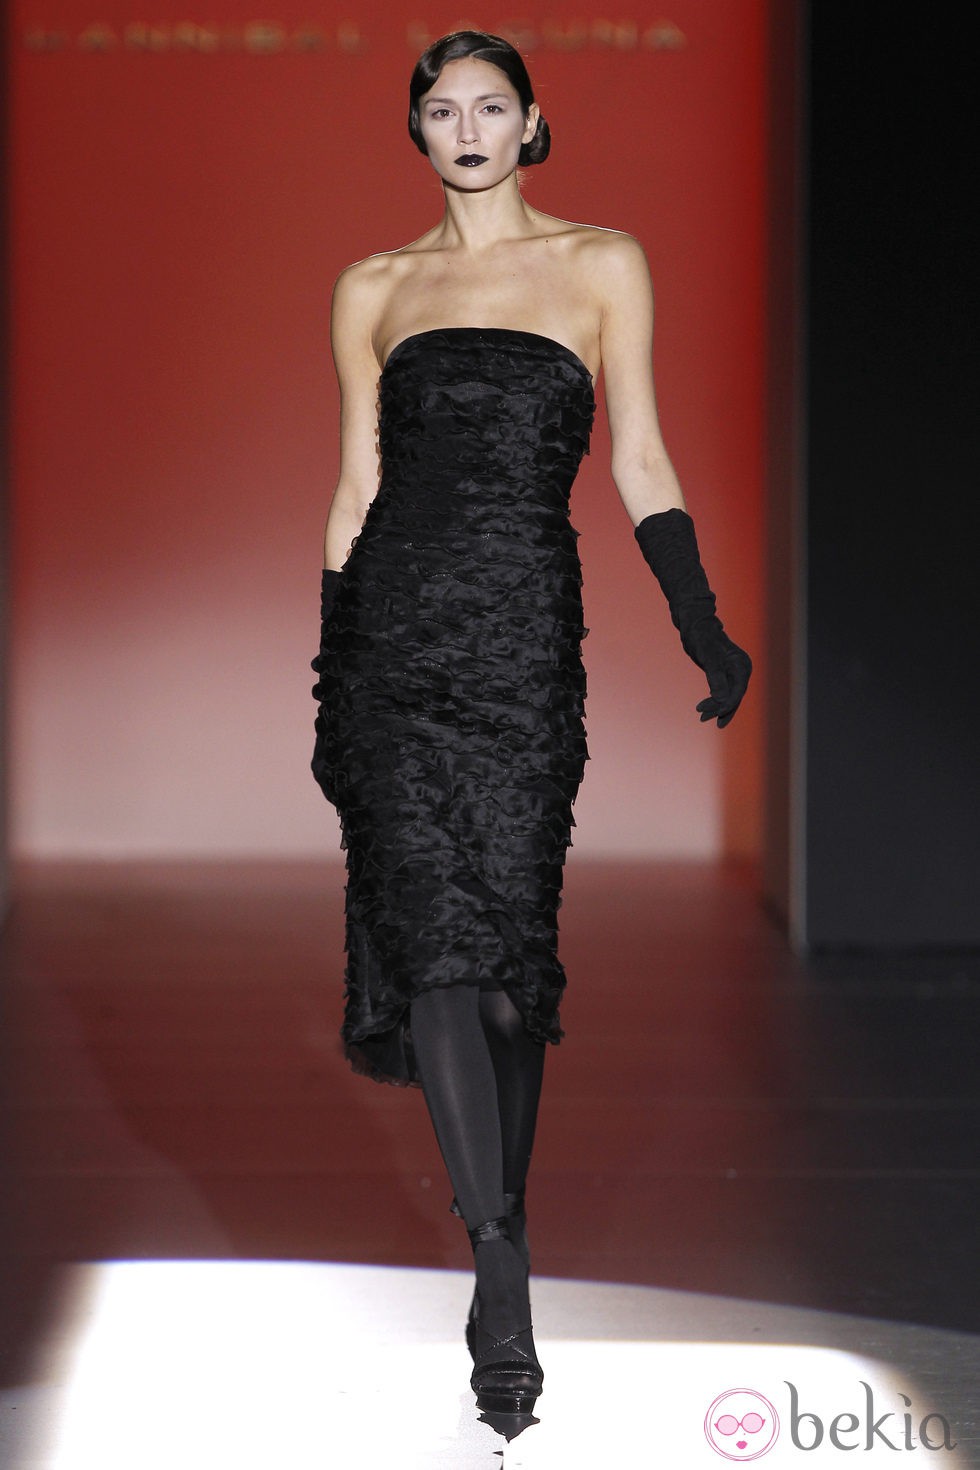 Vestido negro palabra de honor de Hannibal Laguna en Fashion Week Madrid